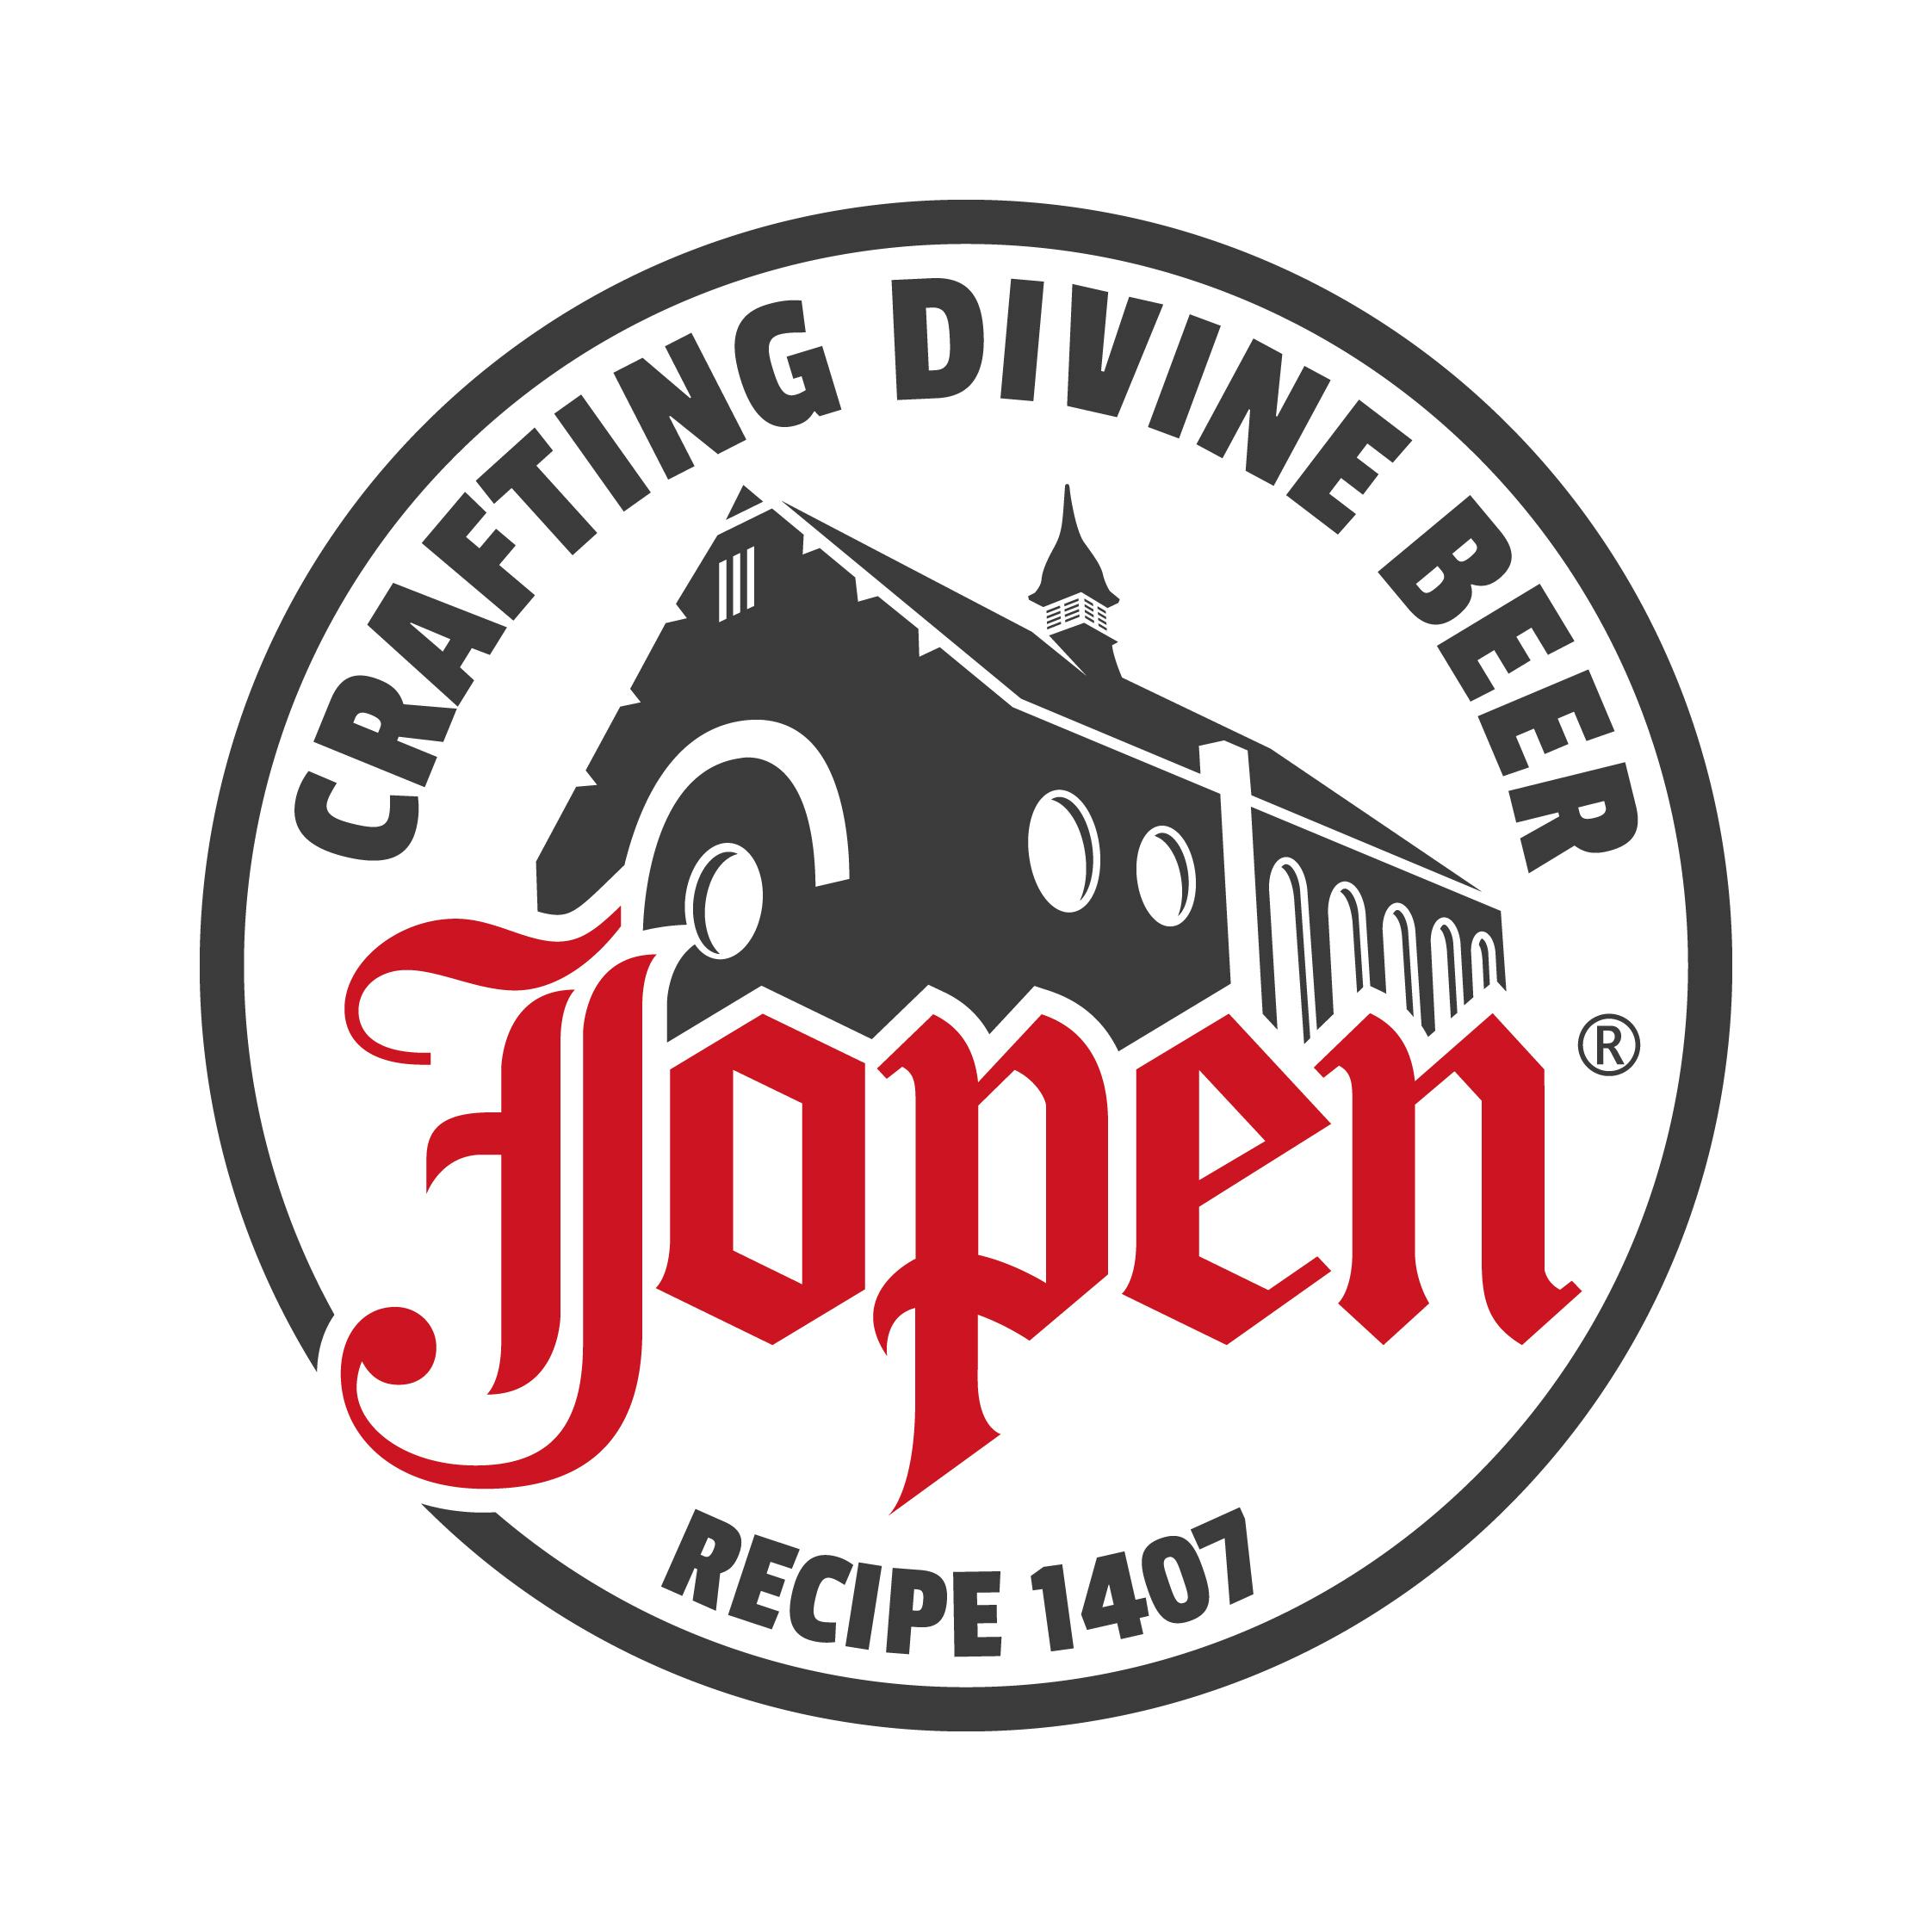 Jopen Mooie Nel uitgeroepen tot beste bier van Nederland 2015